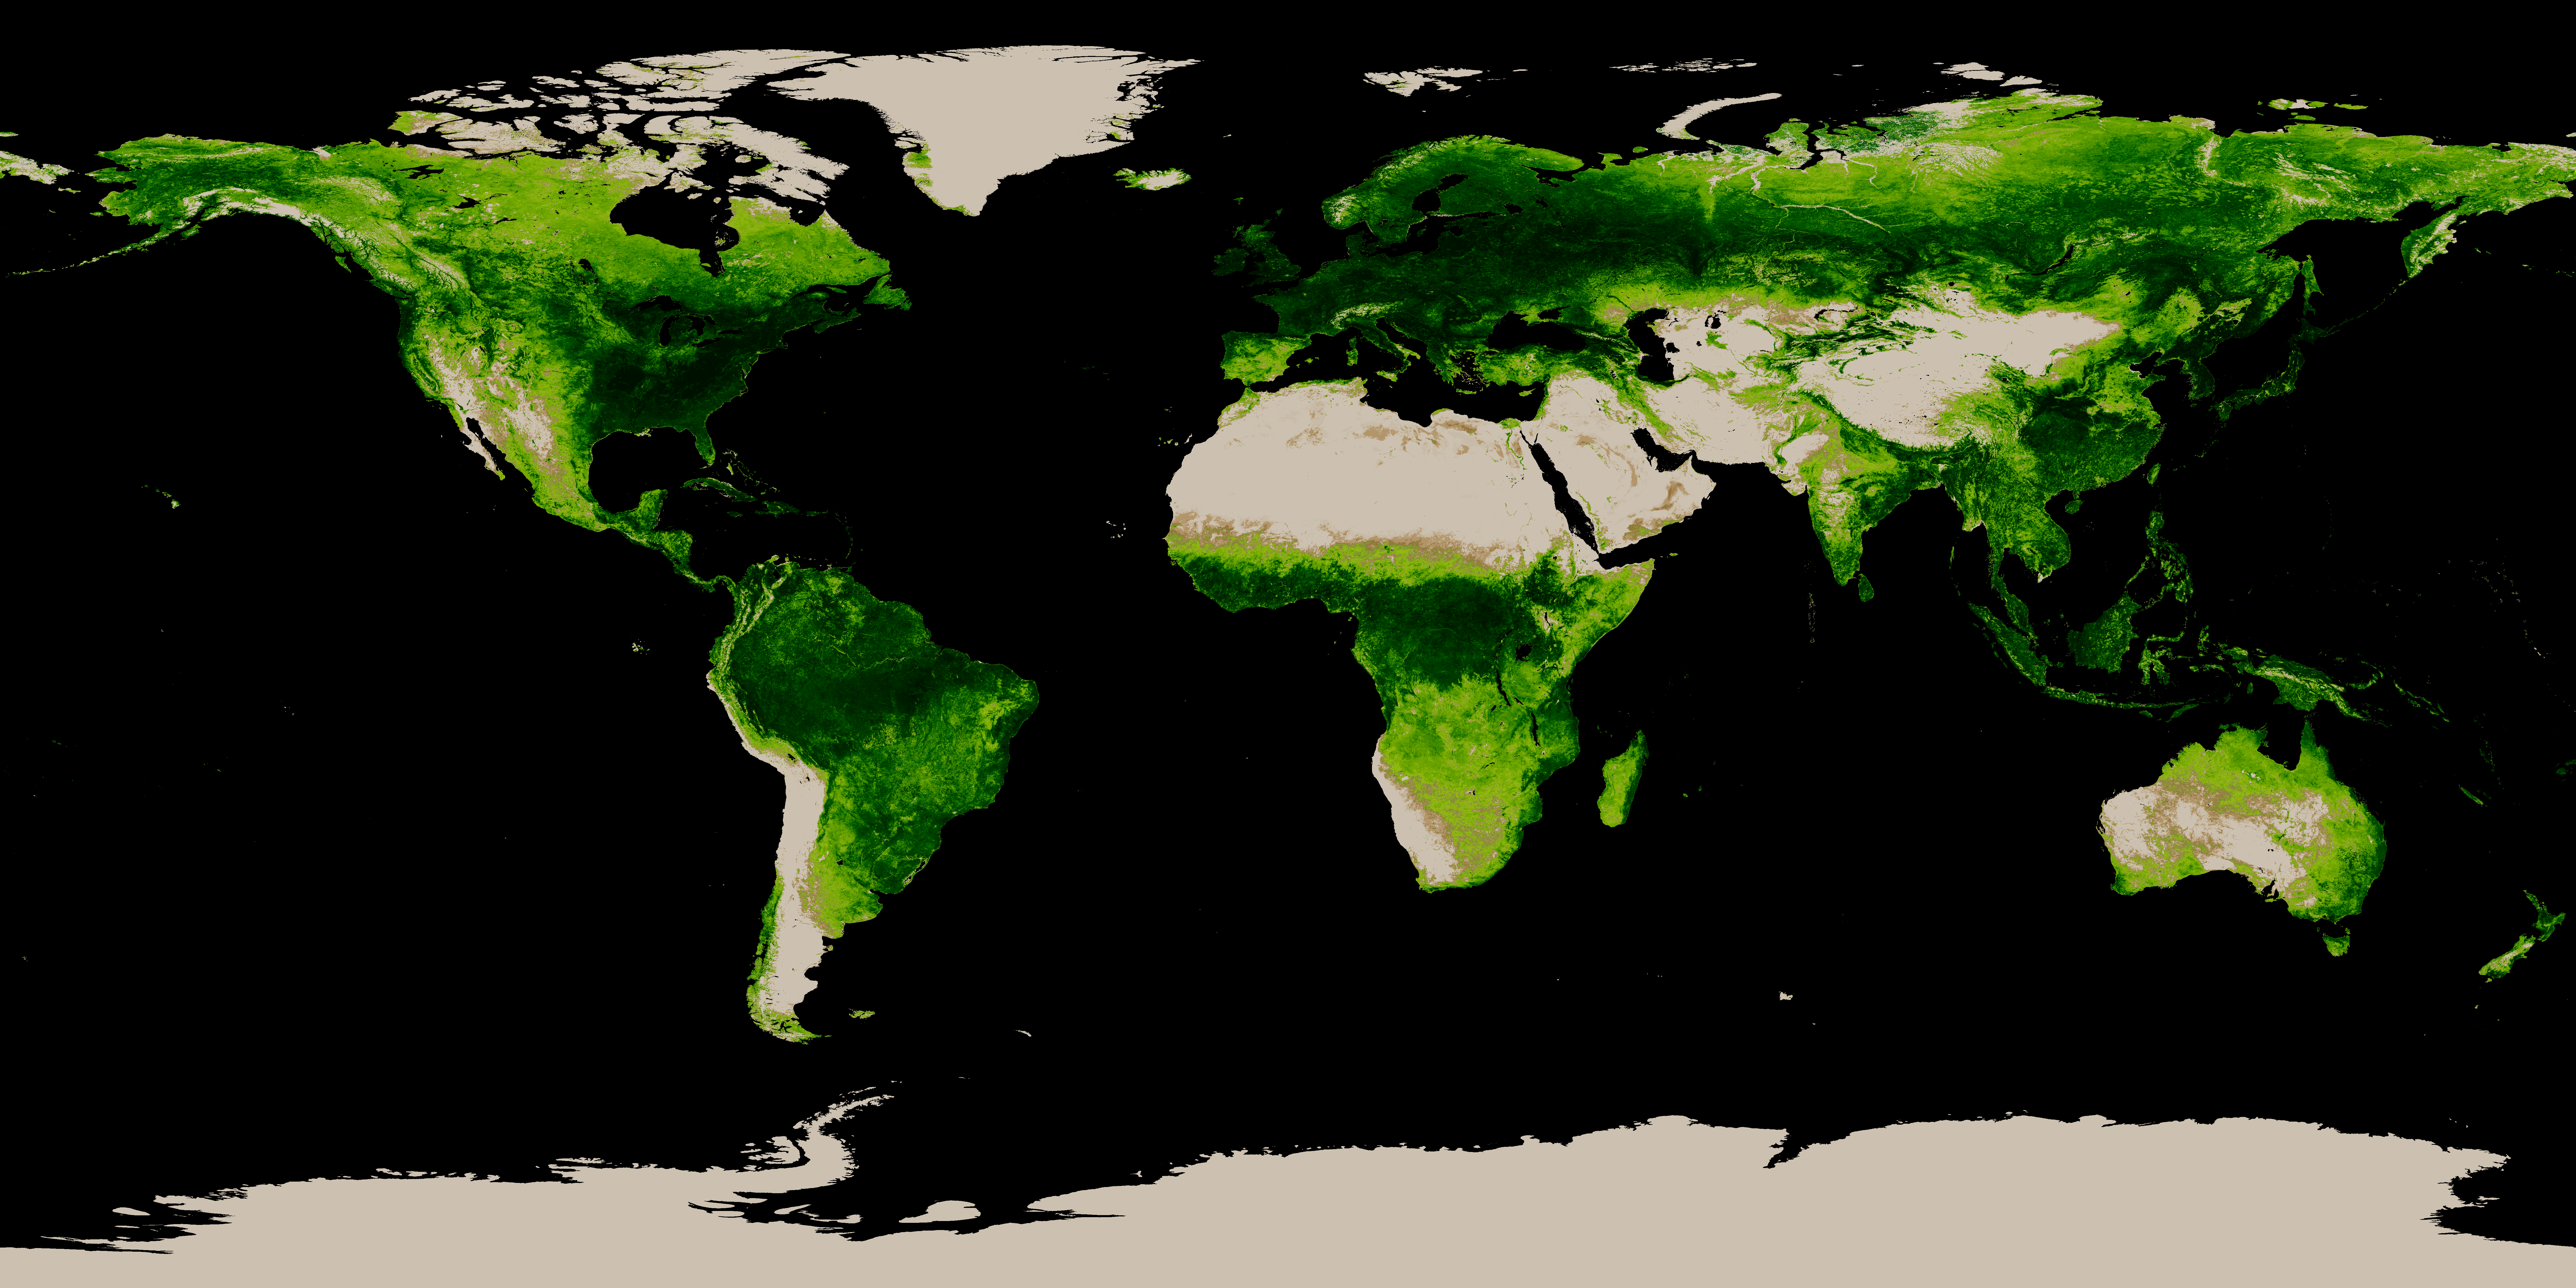 Green Vegetation Fraction (GVF) system